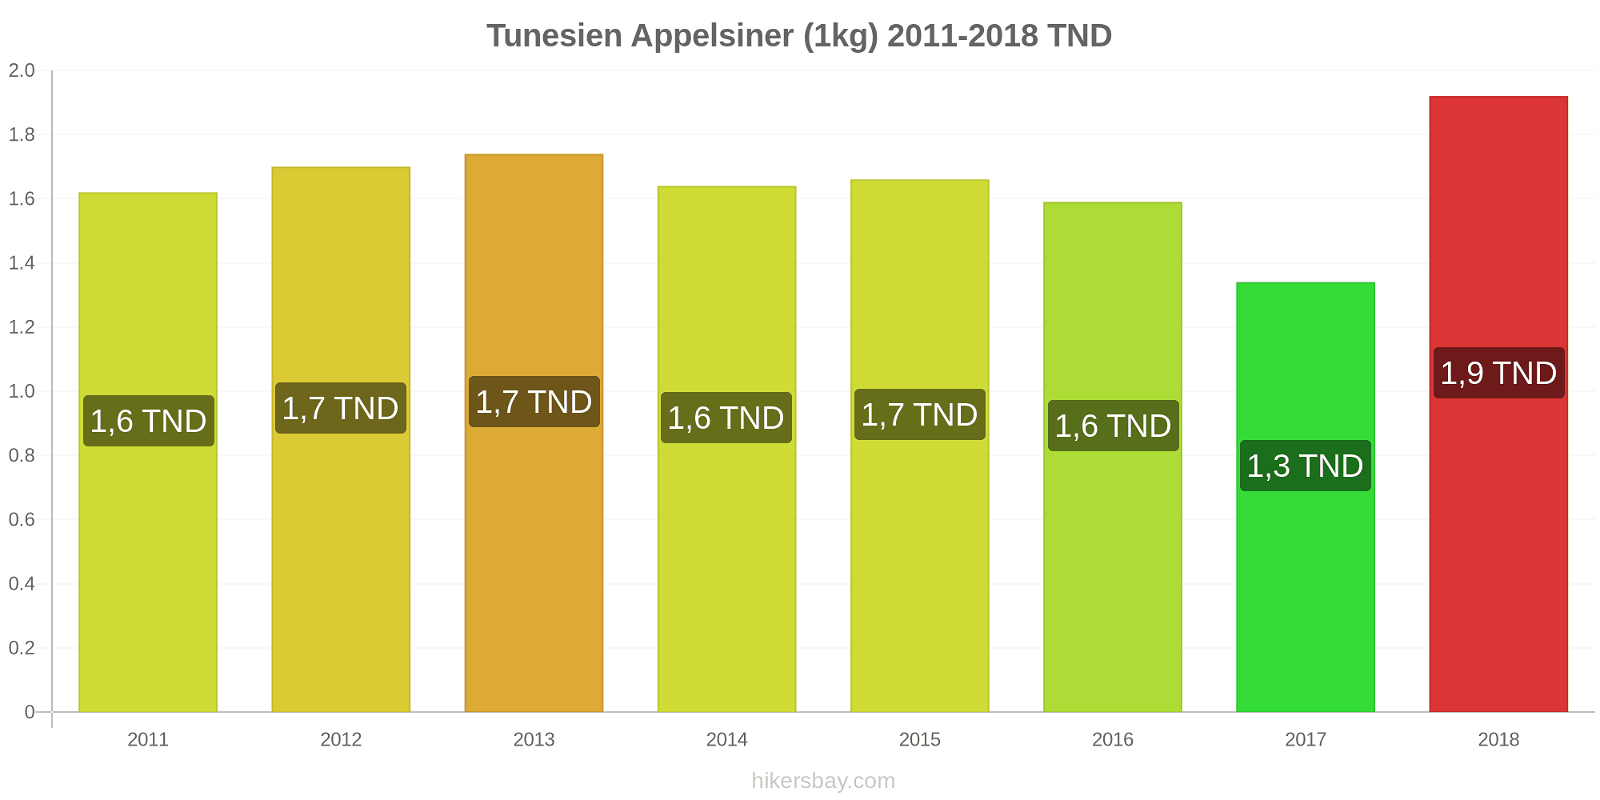 Tunesien prisændringer Appelsiner (1kg) hikersbay.com